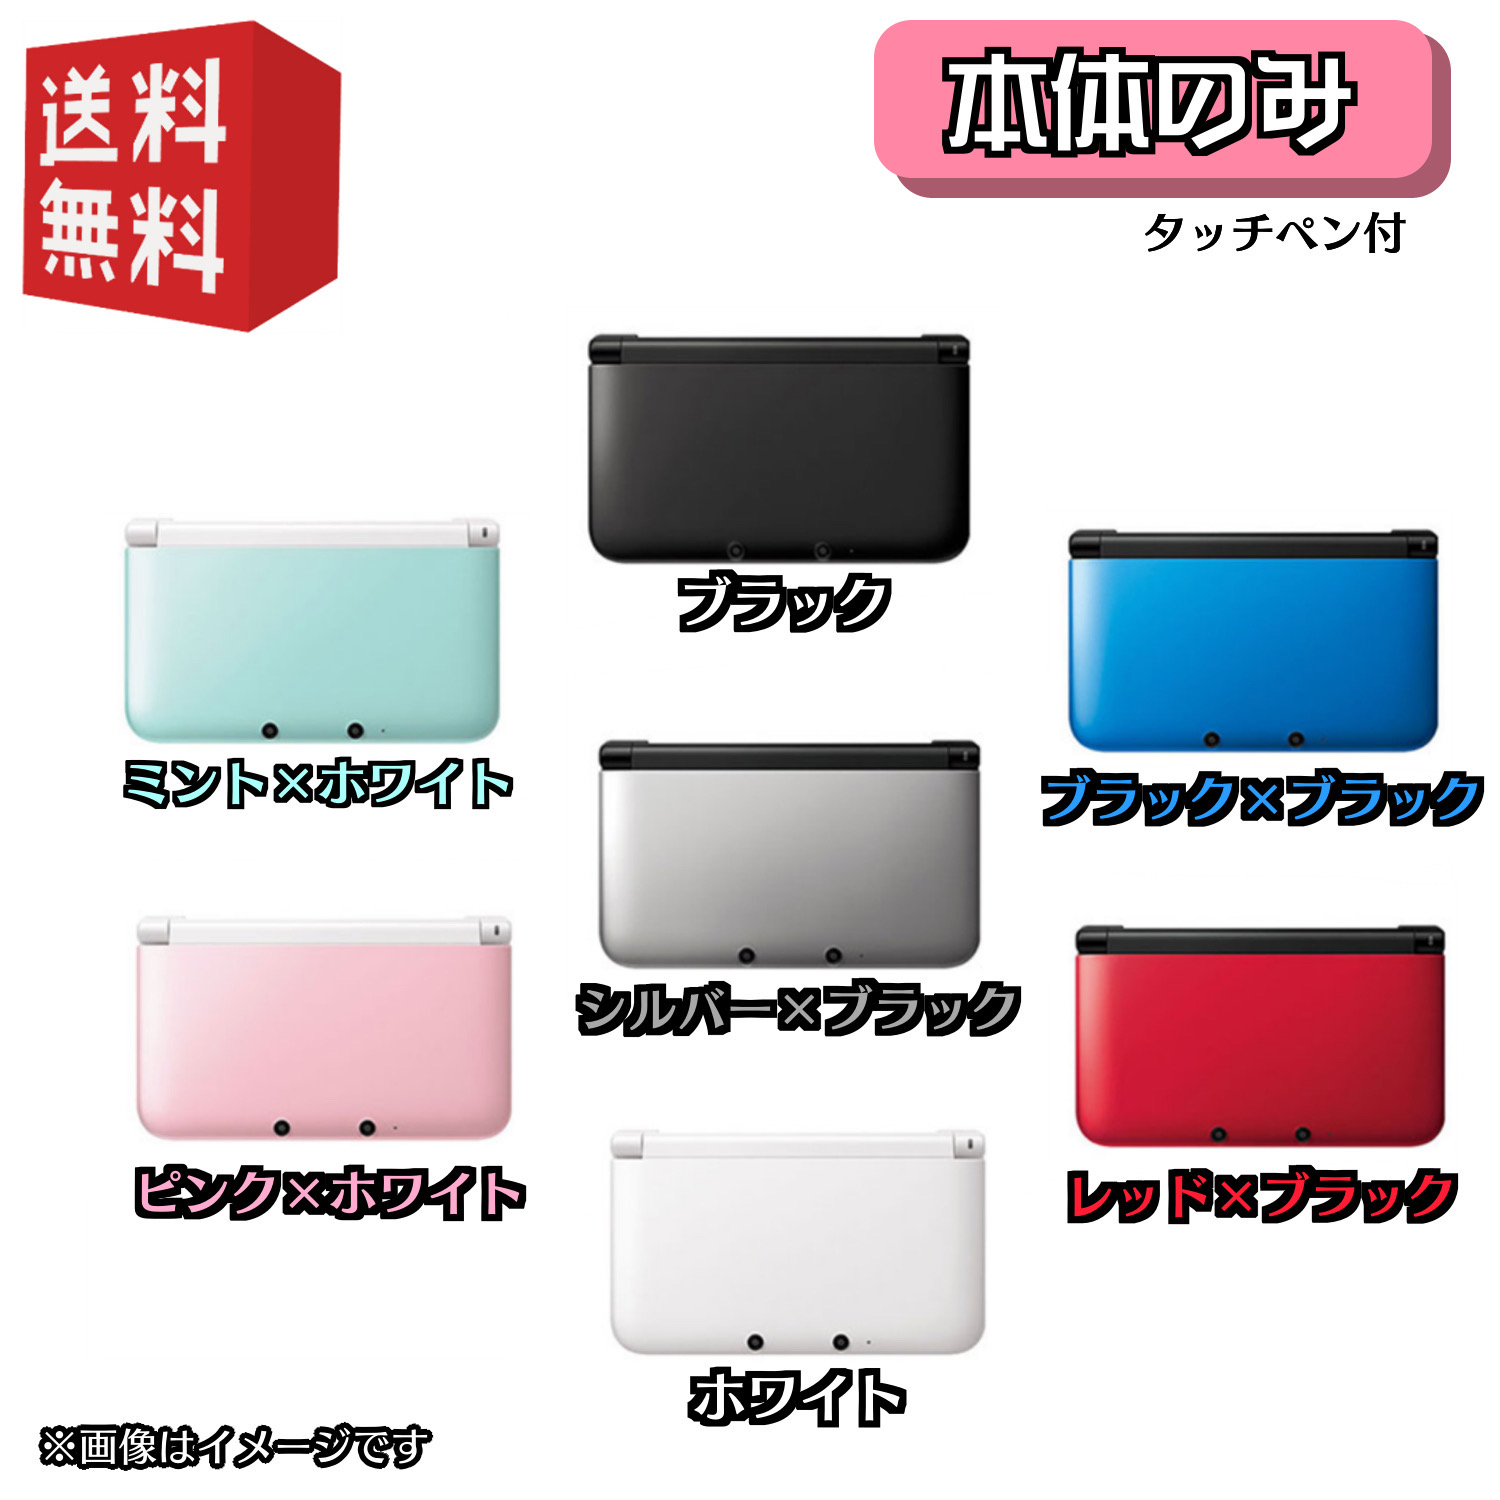 Nintendo 3DS LL 本体 選べるカラー7色 ☆キャンペーン対象商品☆ 流行 